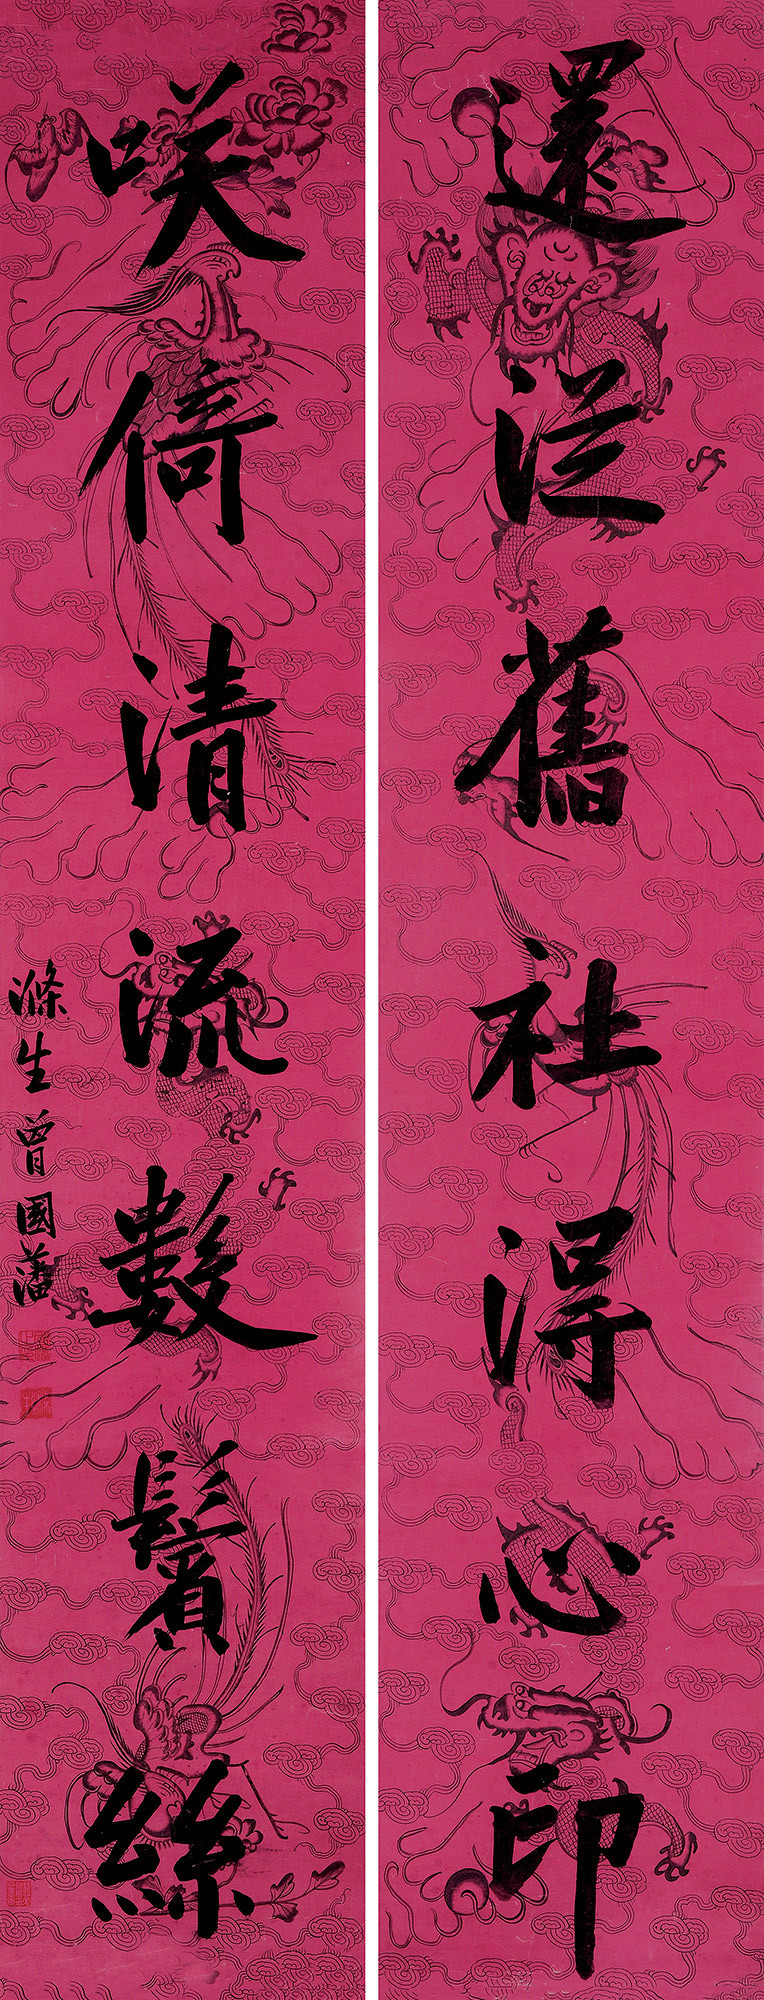 seven-character calligraphy in regular script